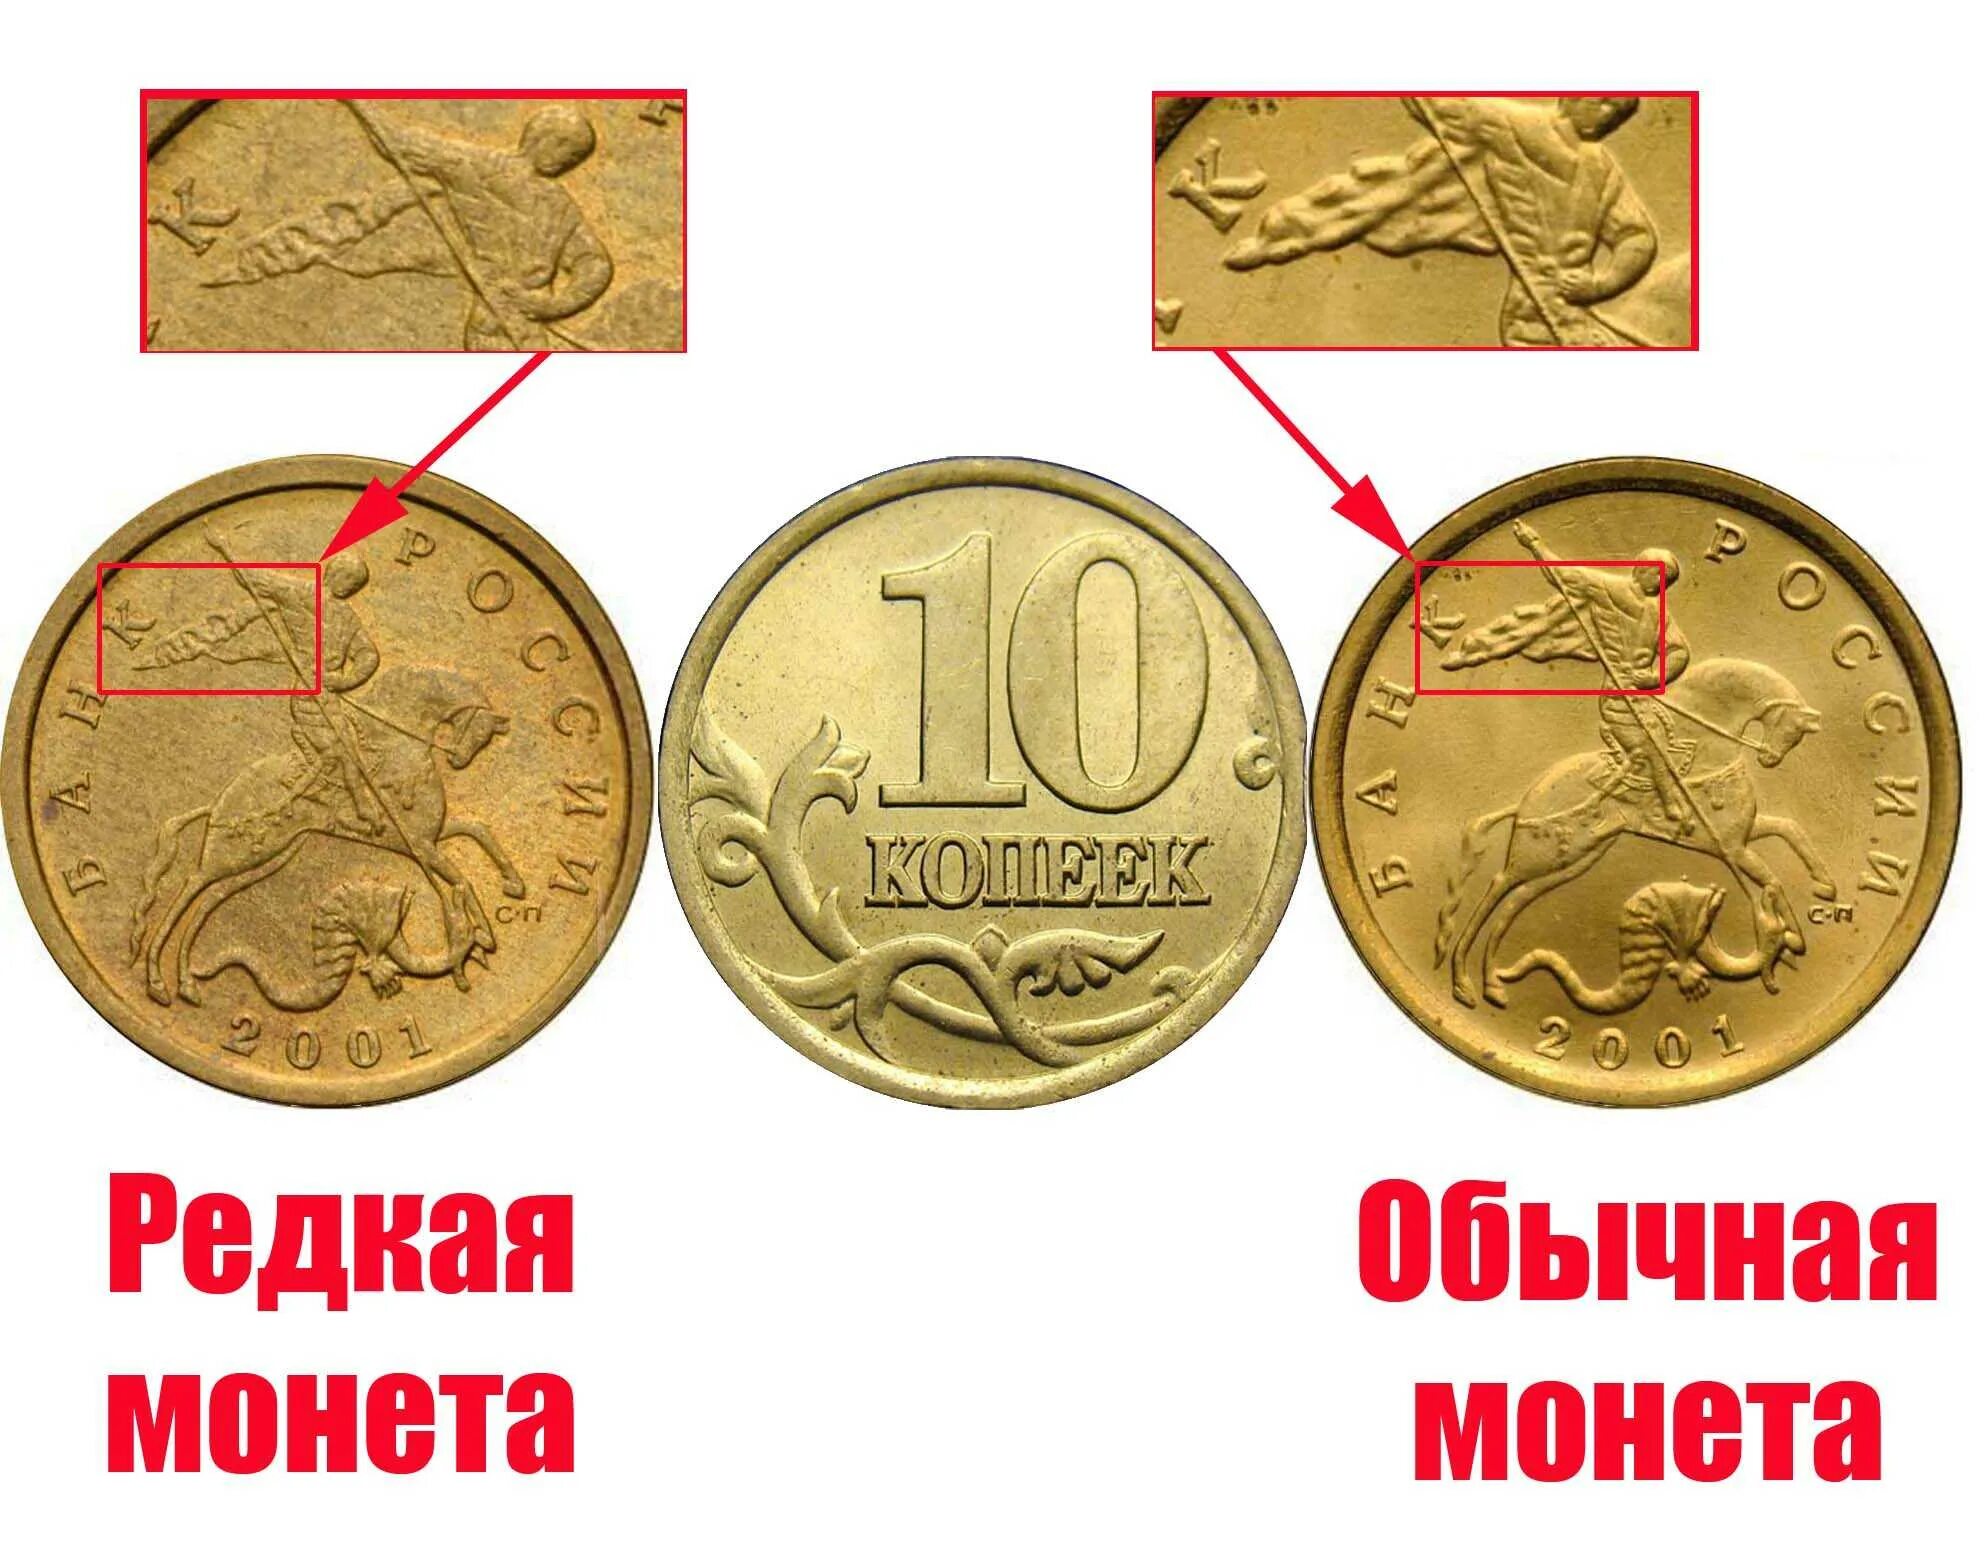 5 рублей имеющие ценность. Дорогие монеты. Самые дорогие монеты России. Редкие дорогие монеты. Ценные современные монеты.